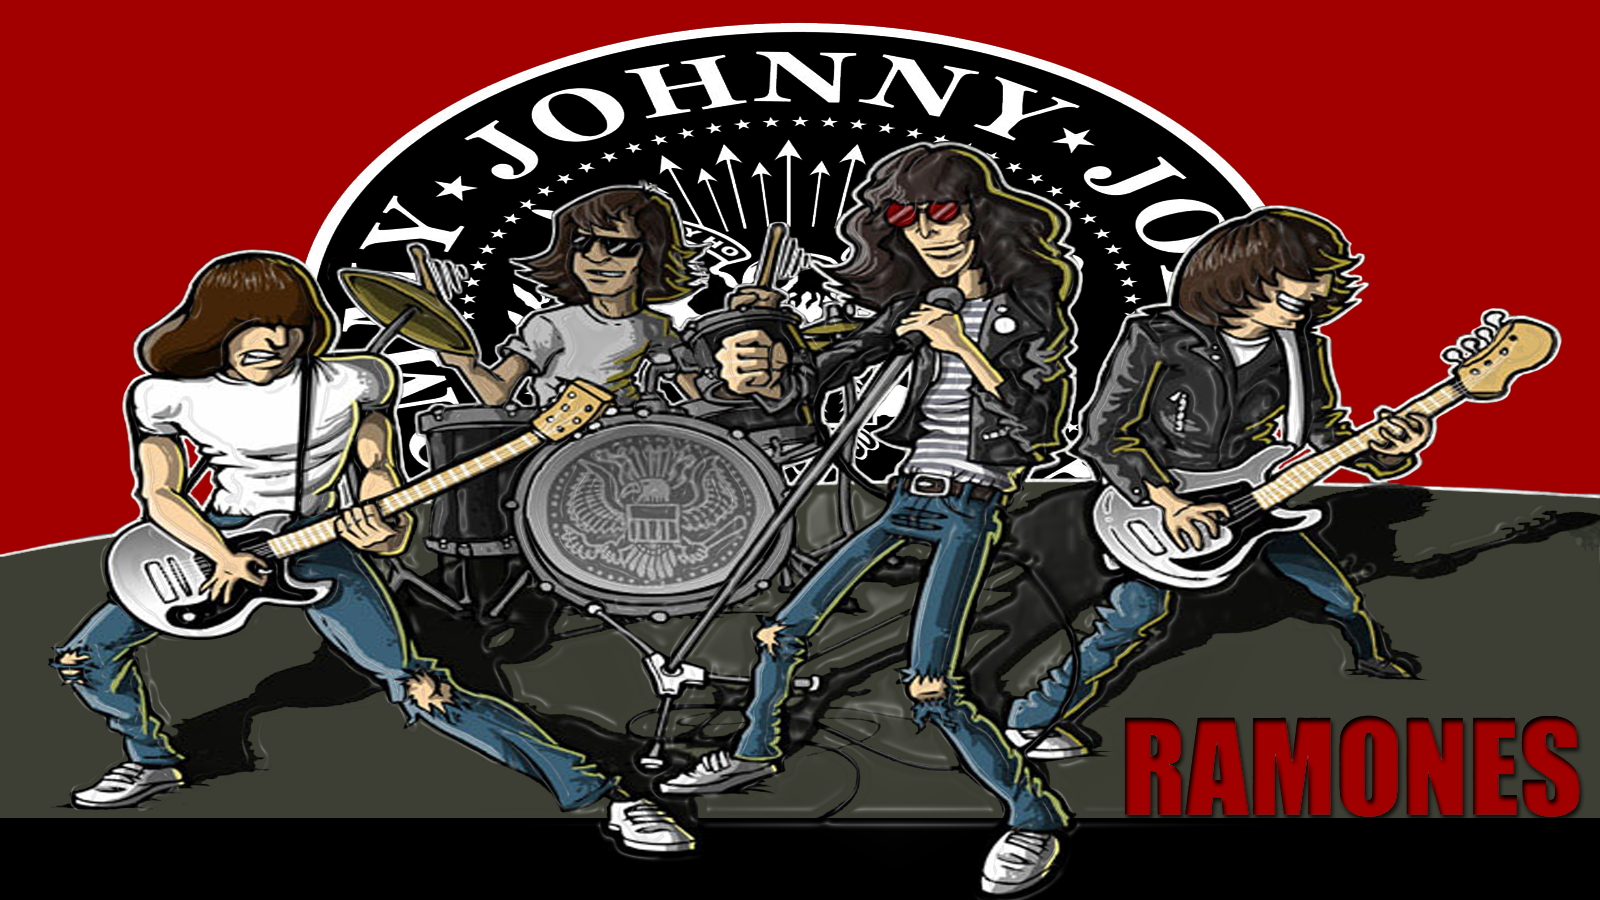 The Ramones Puter Wallpaper Desktop Background